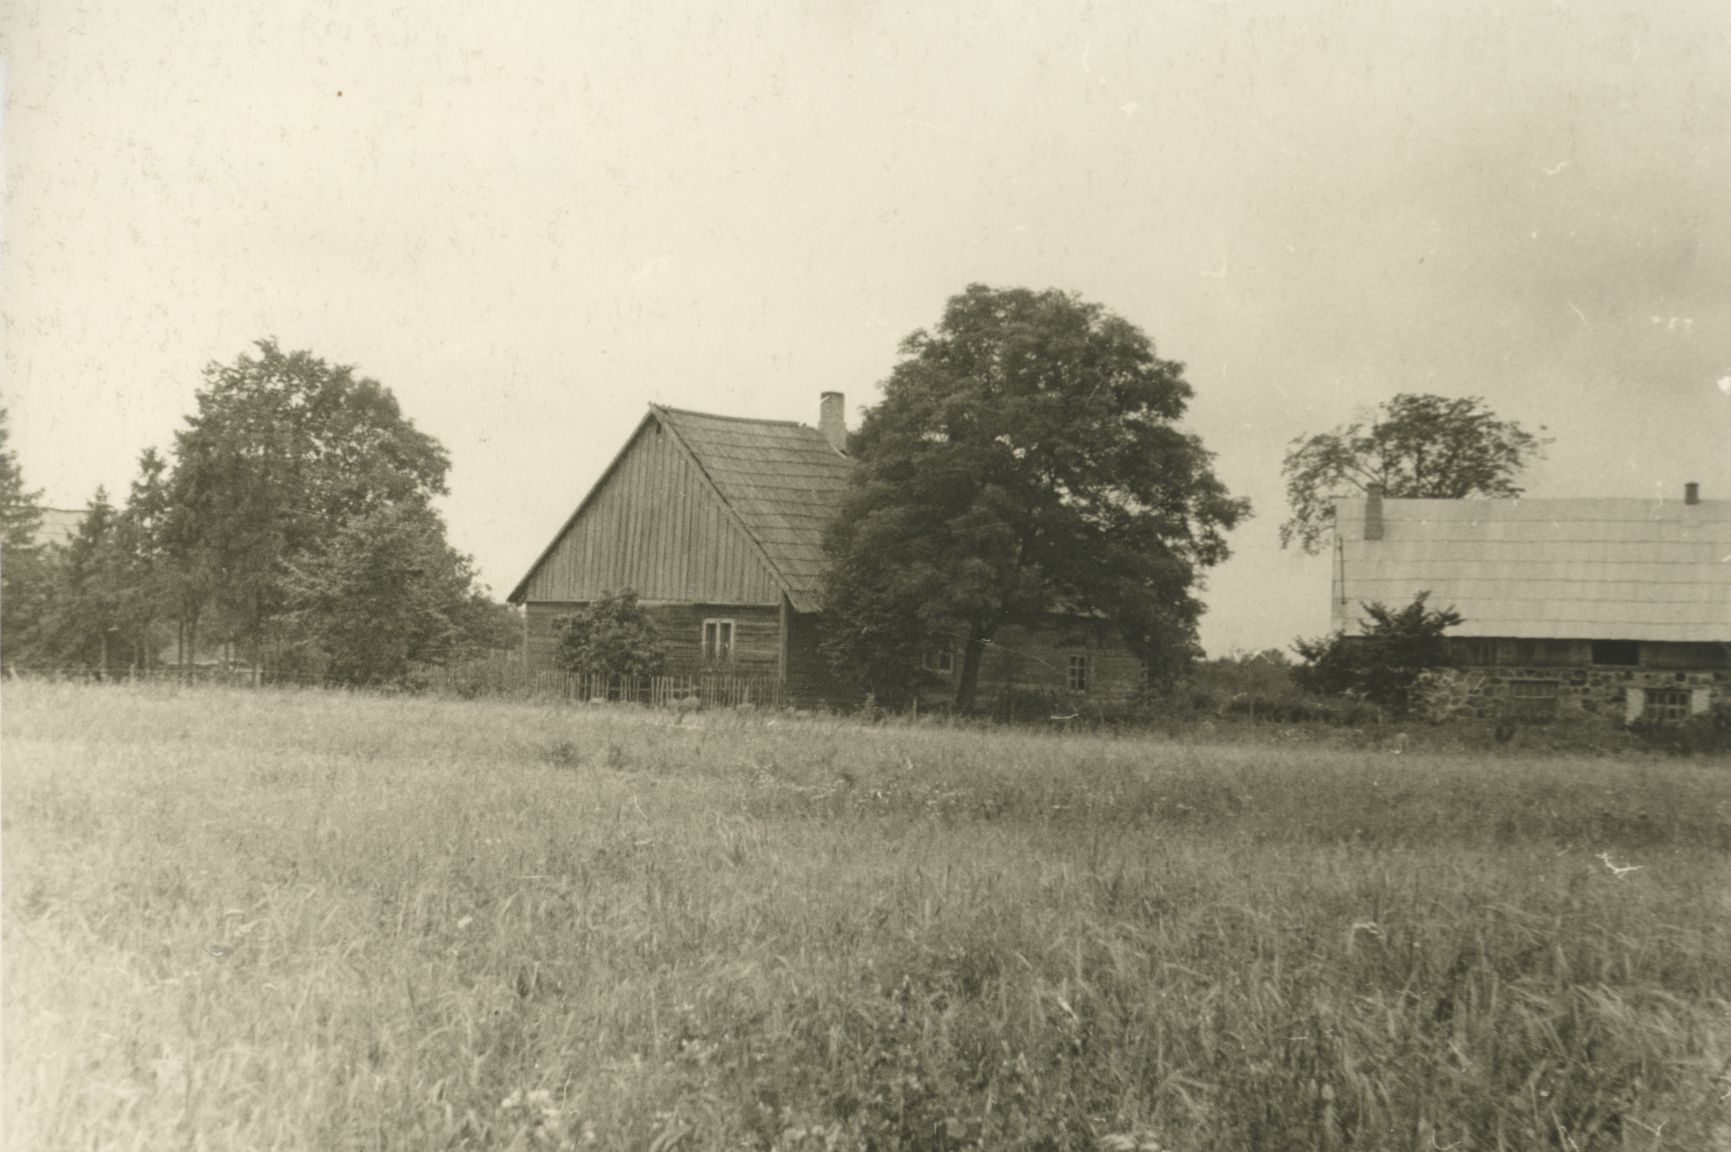 Mart Kiirats' birthplace in Tõstamaa, Endriku-Jaagu farm